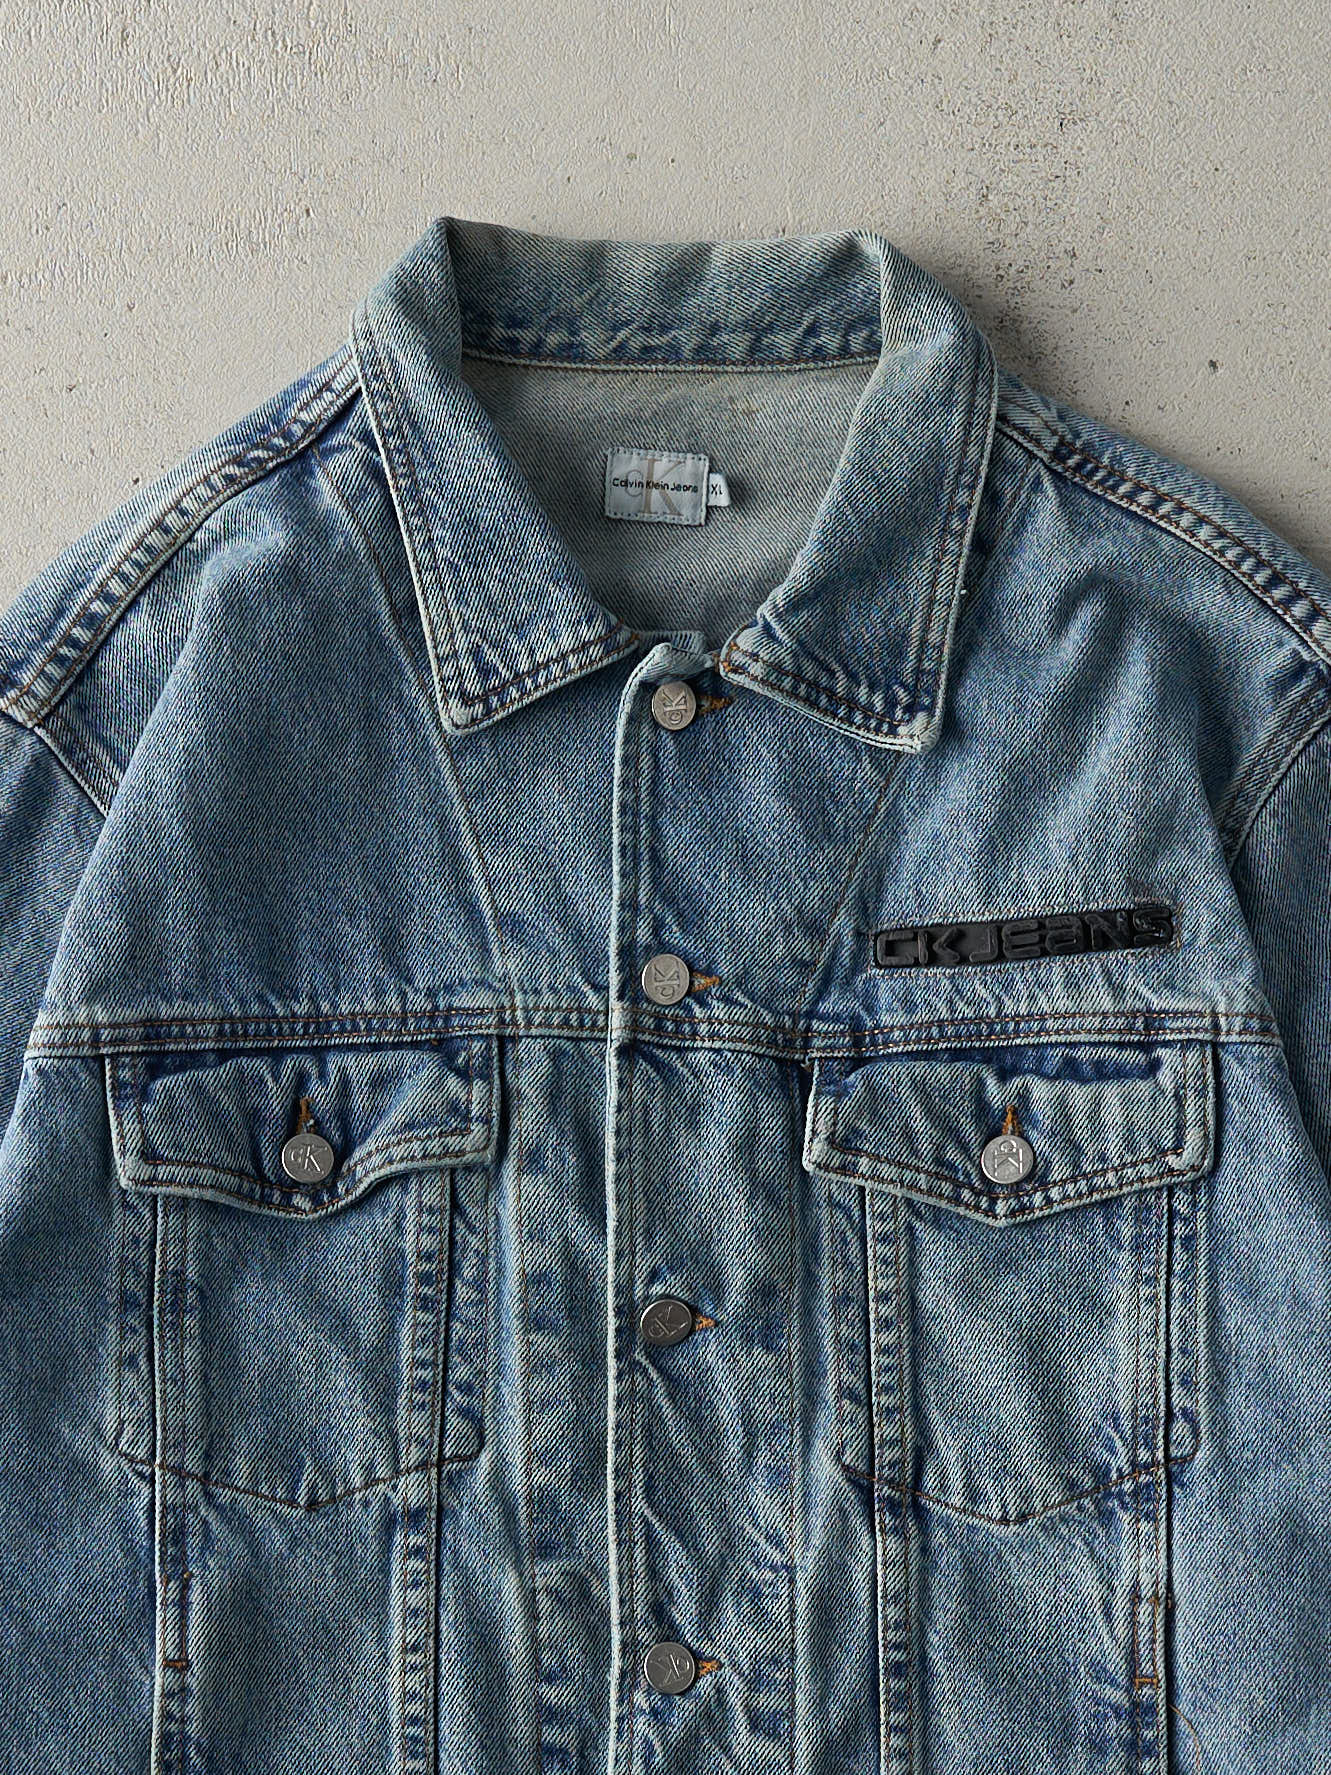 Vintage 90s Light Wash Calvin Klein Denim Jacket (M)